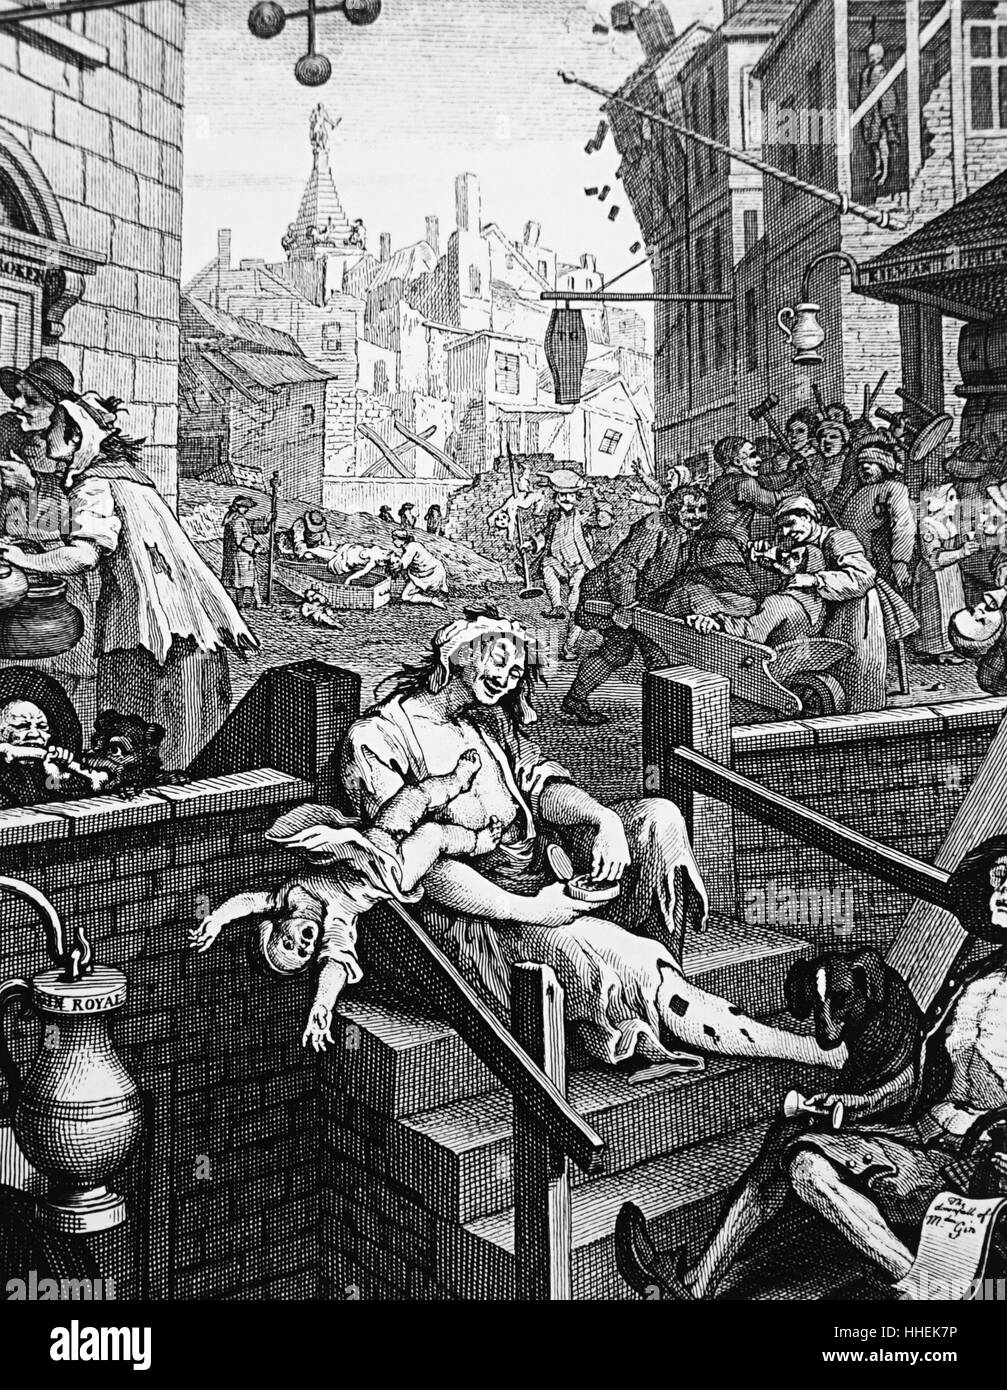 Grabado titulado "Gin Lane" por William Hogarth (1697-1764) que representa los males del desenfrenado consumo de bebidas espirituosas. Fecha del siglo XVIII Foto de stock